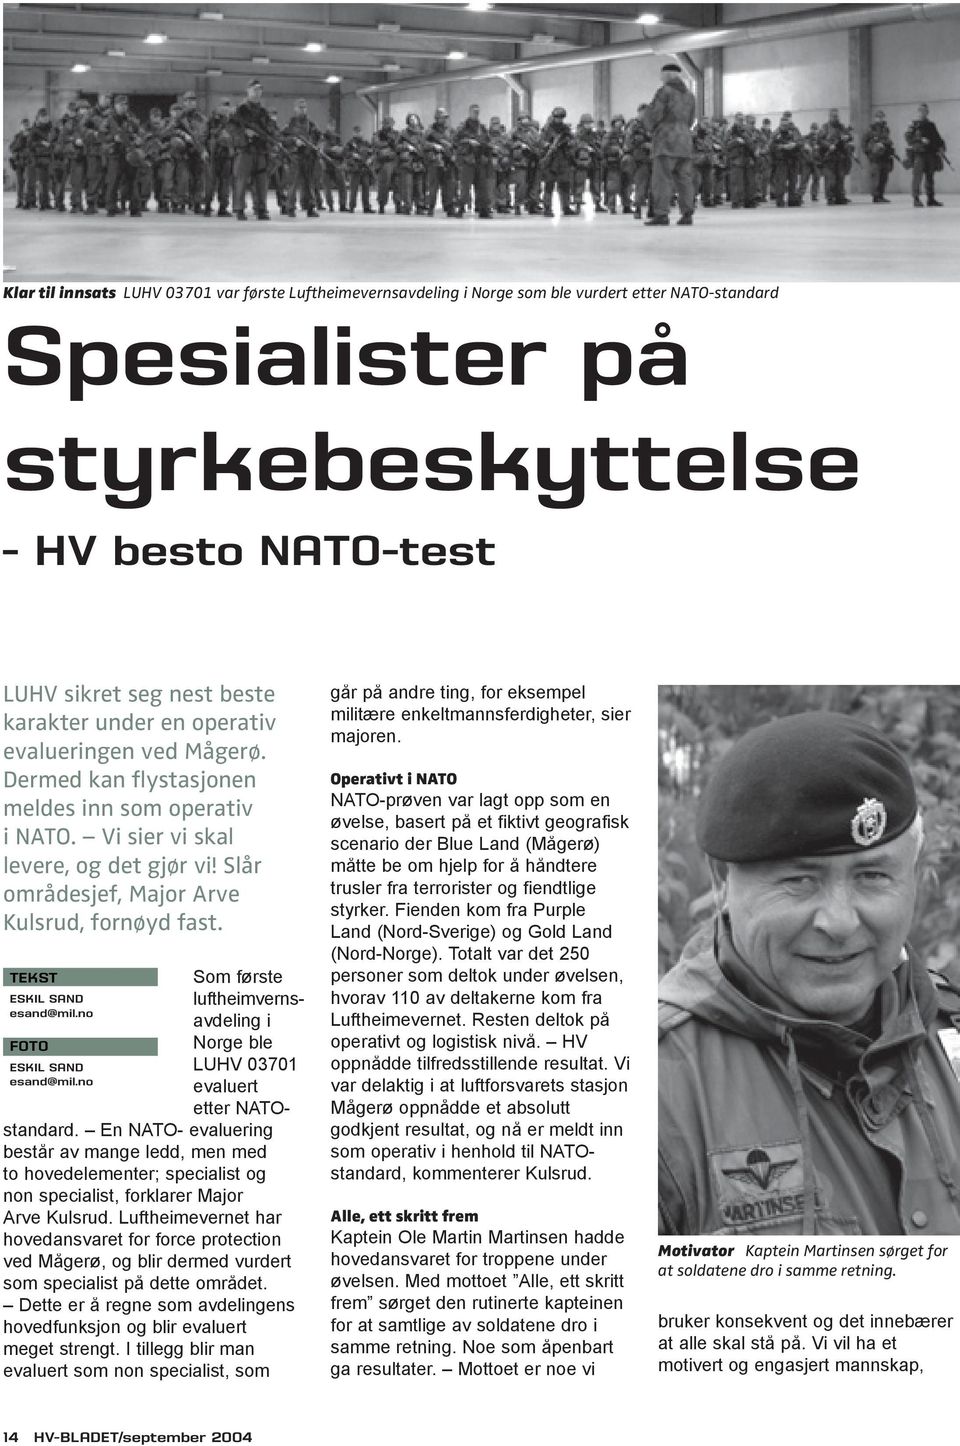 ESKIL SAND esand@mil.no ESKIL SAND esand@mil.no Som første luft heimvernsavdeling i Norge ble LUHV 03701 evaluert etter NATOstandard.